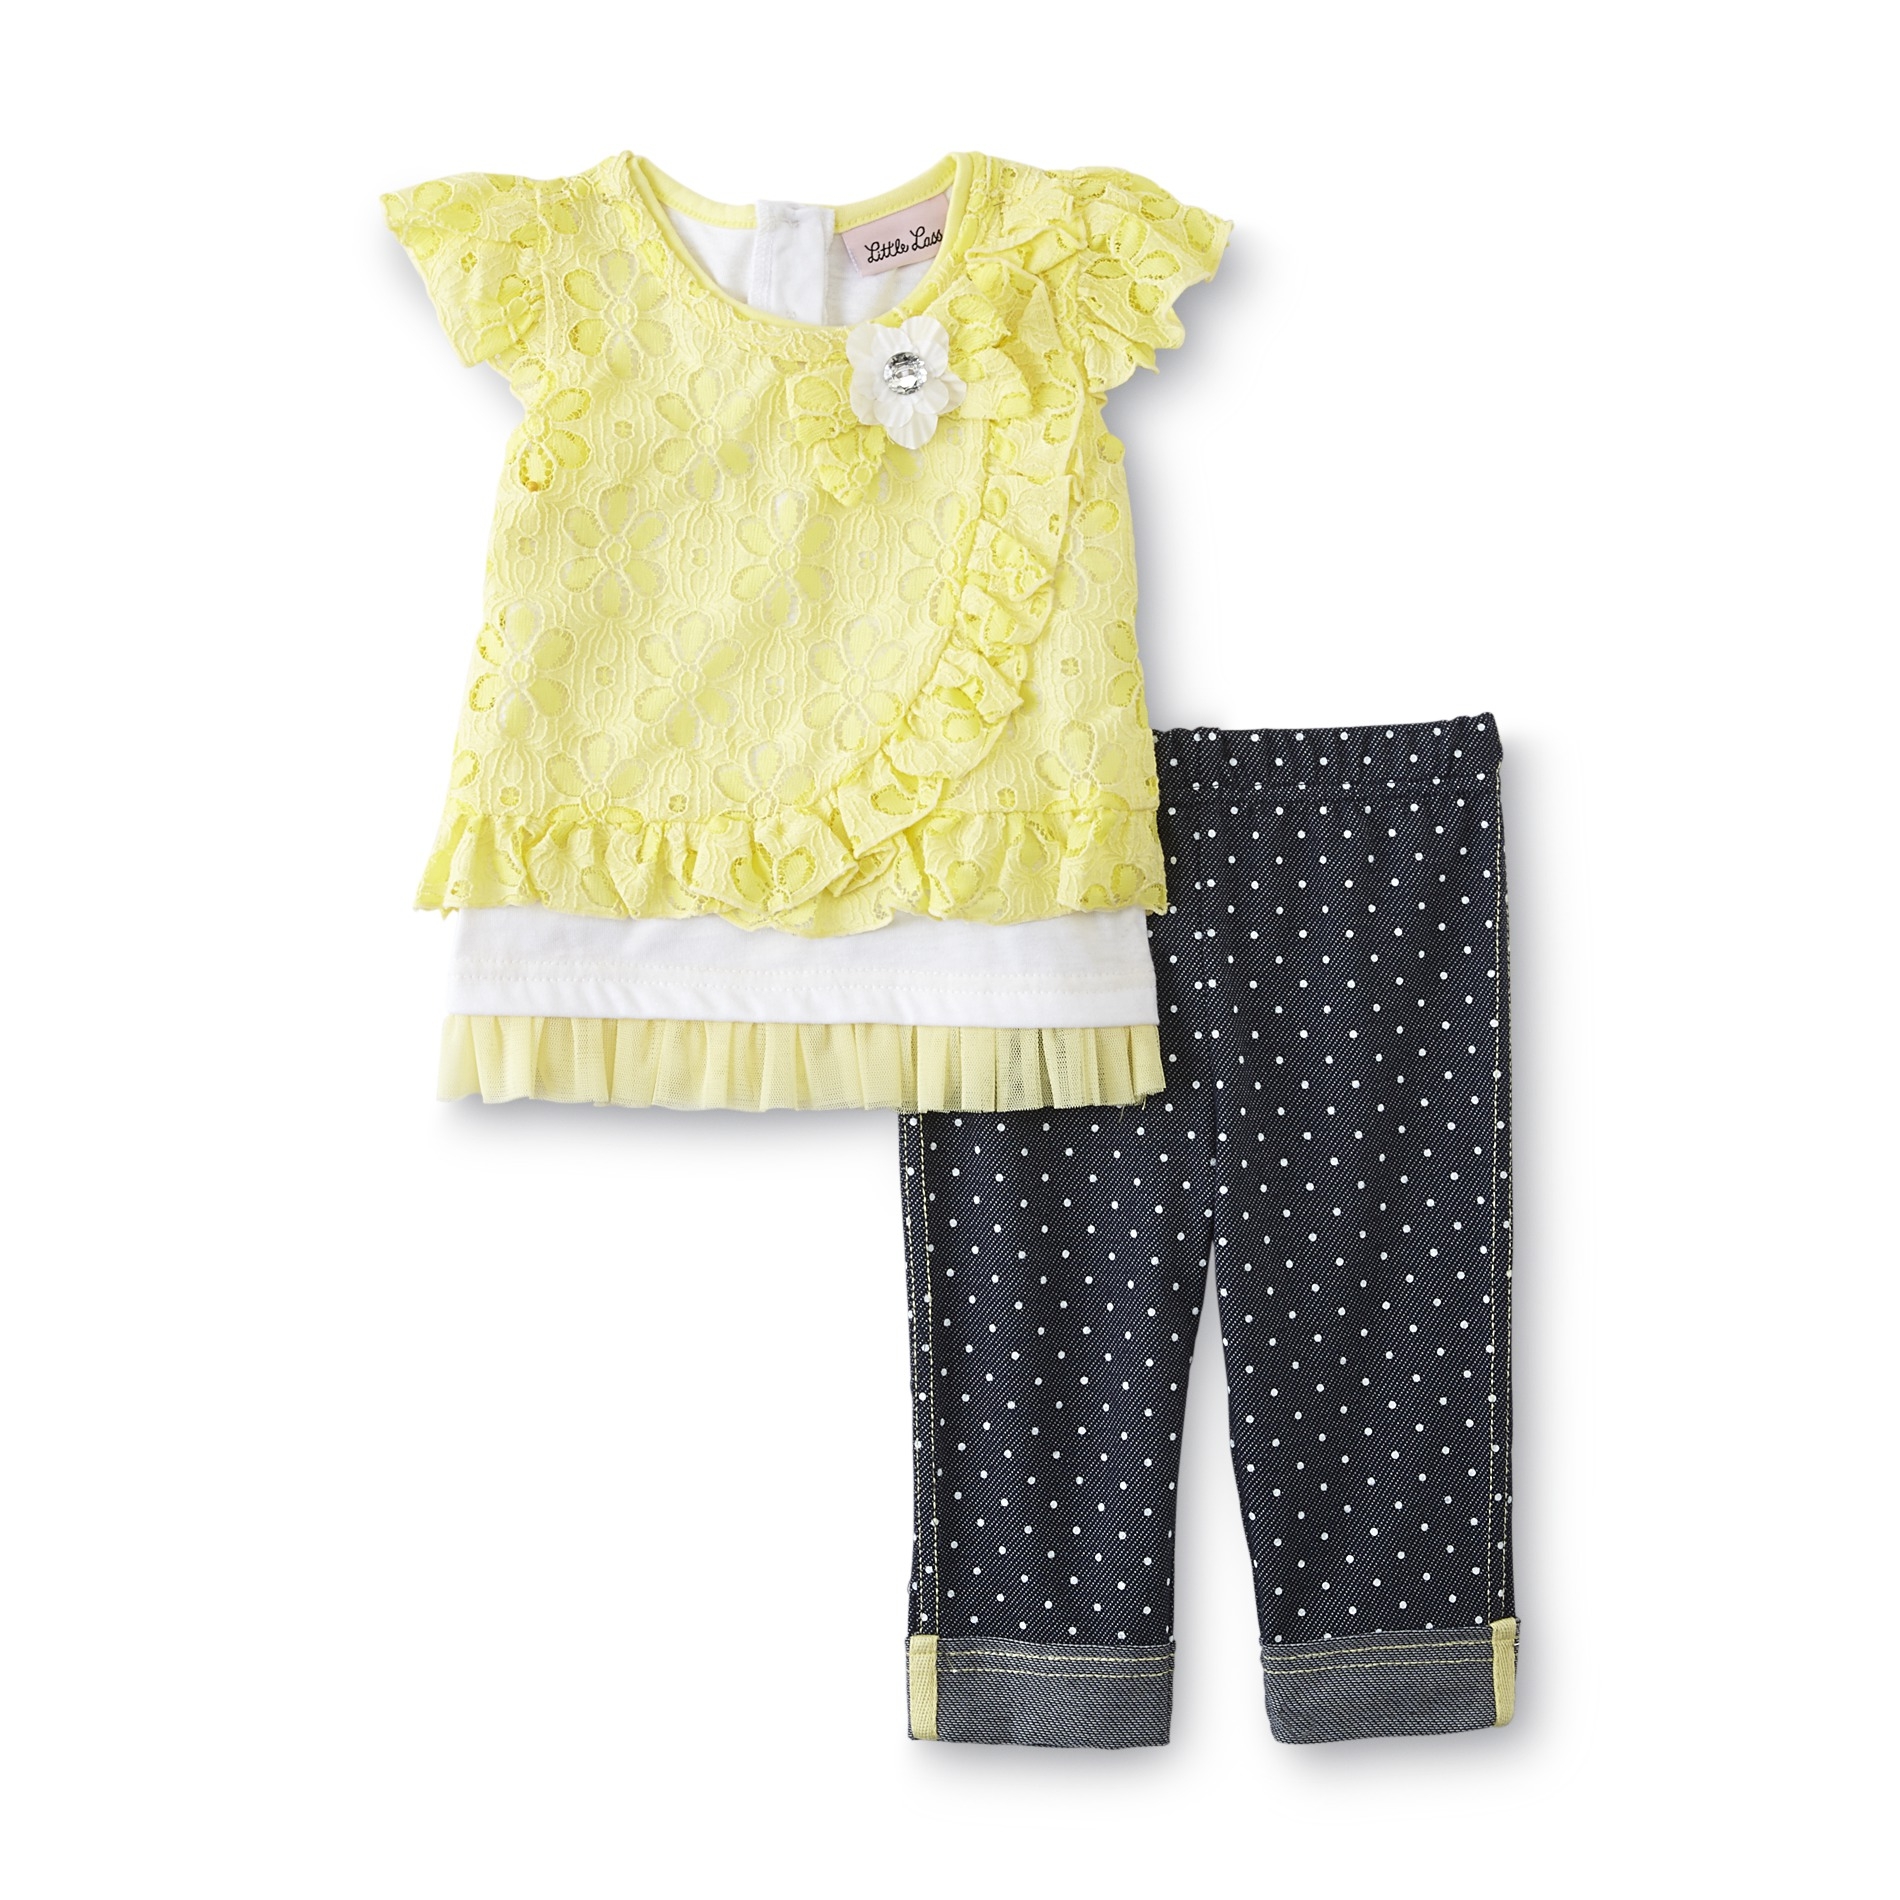 Little Lass Infant & Toddler Girl's Top & Leggings - Polka Dots